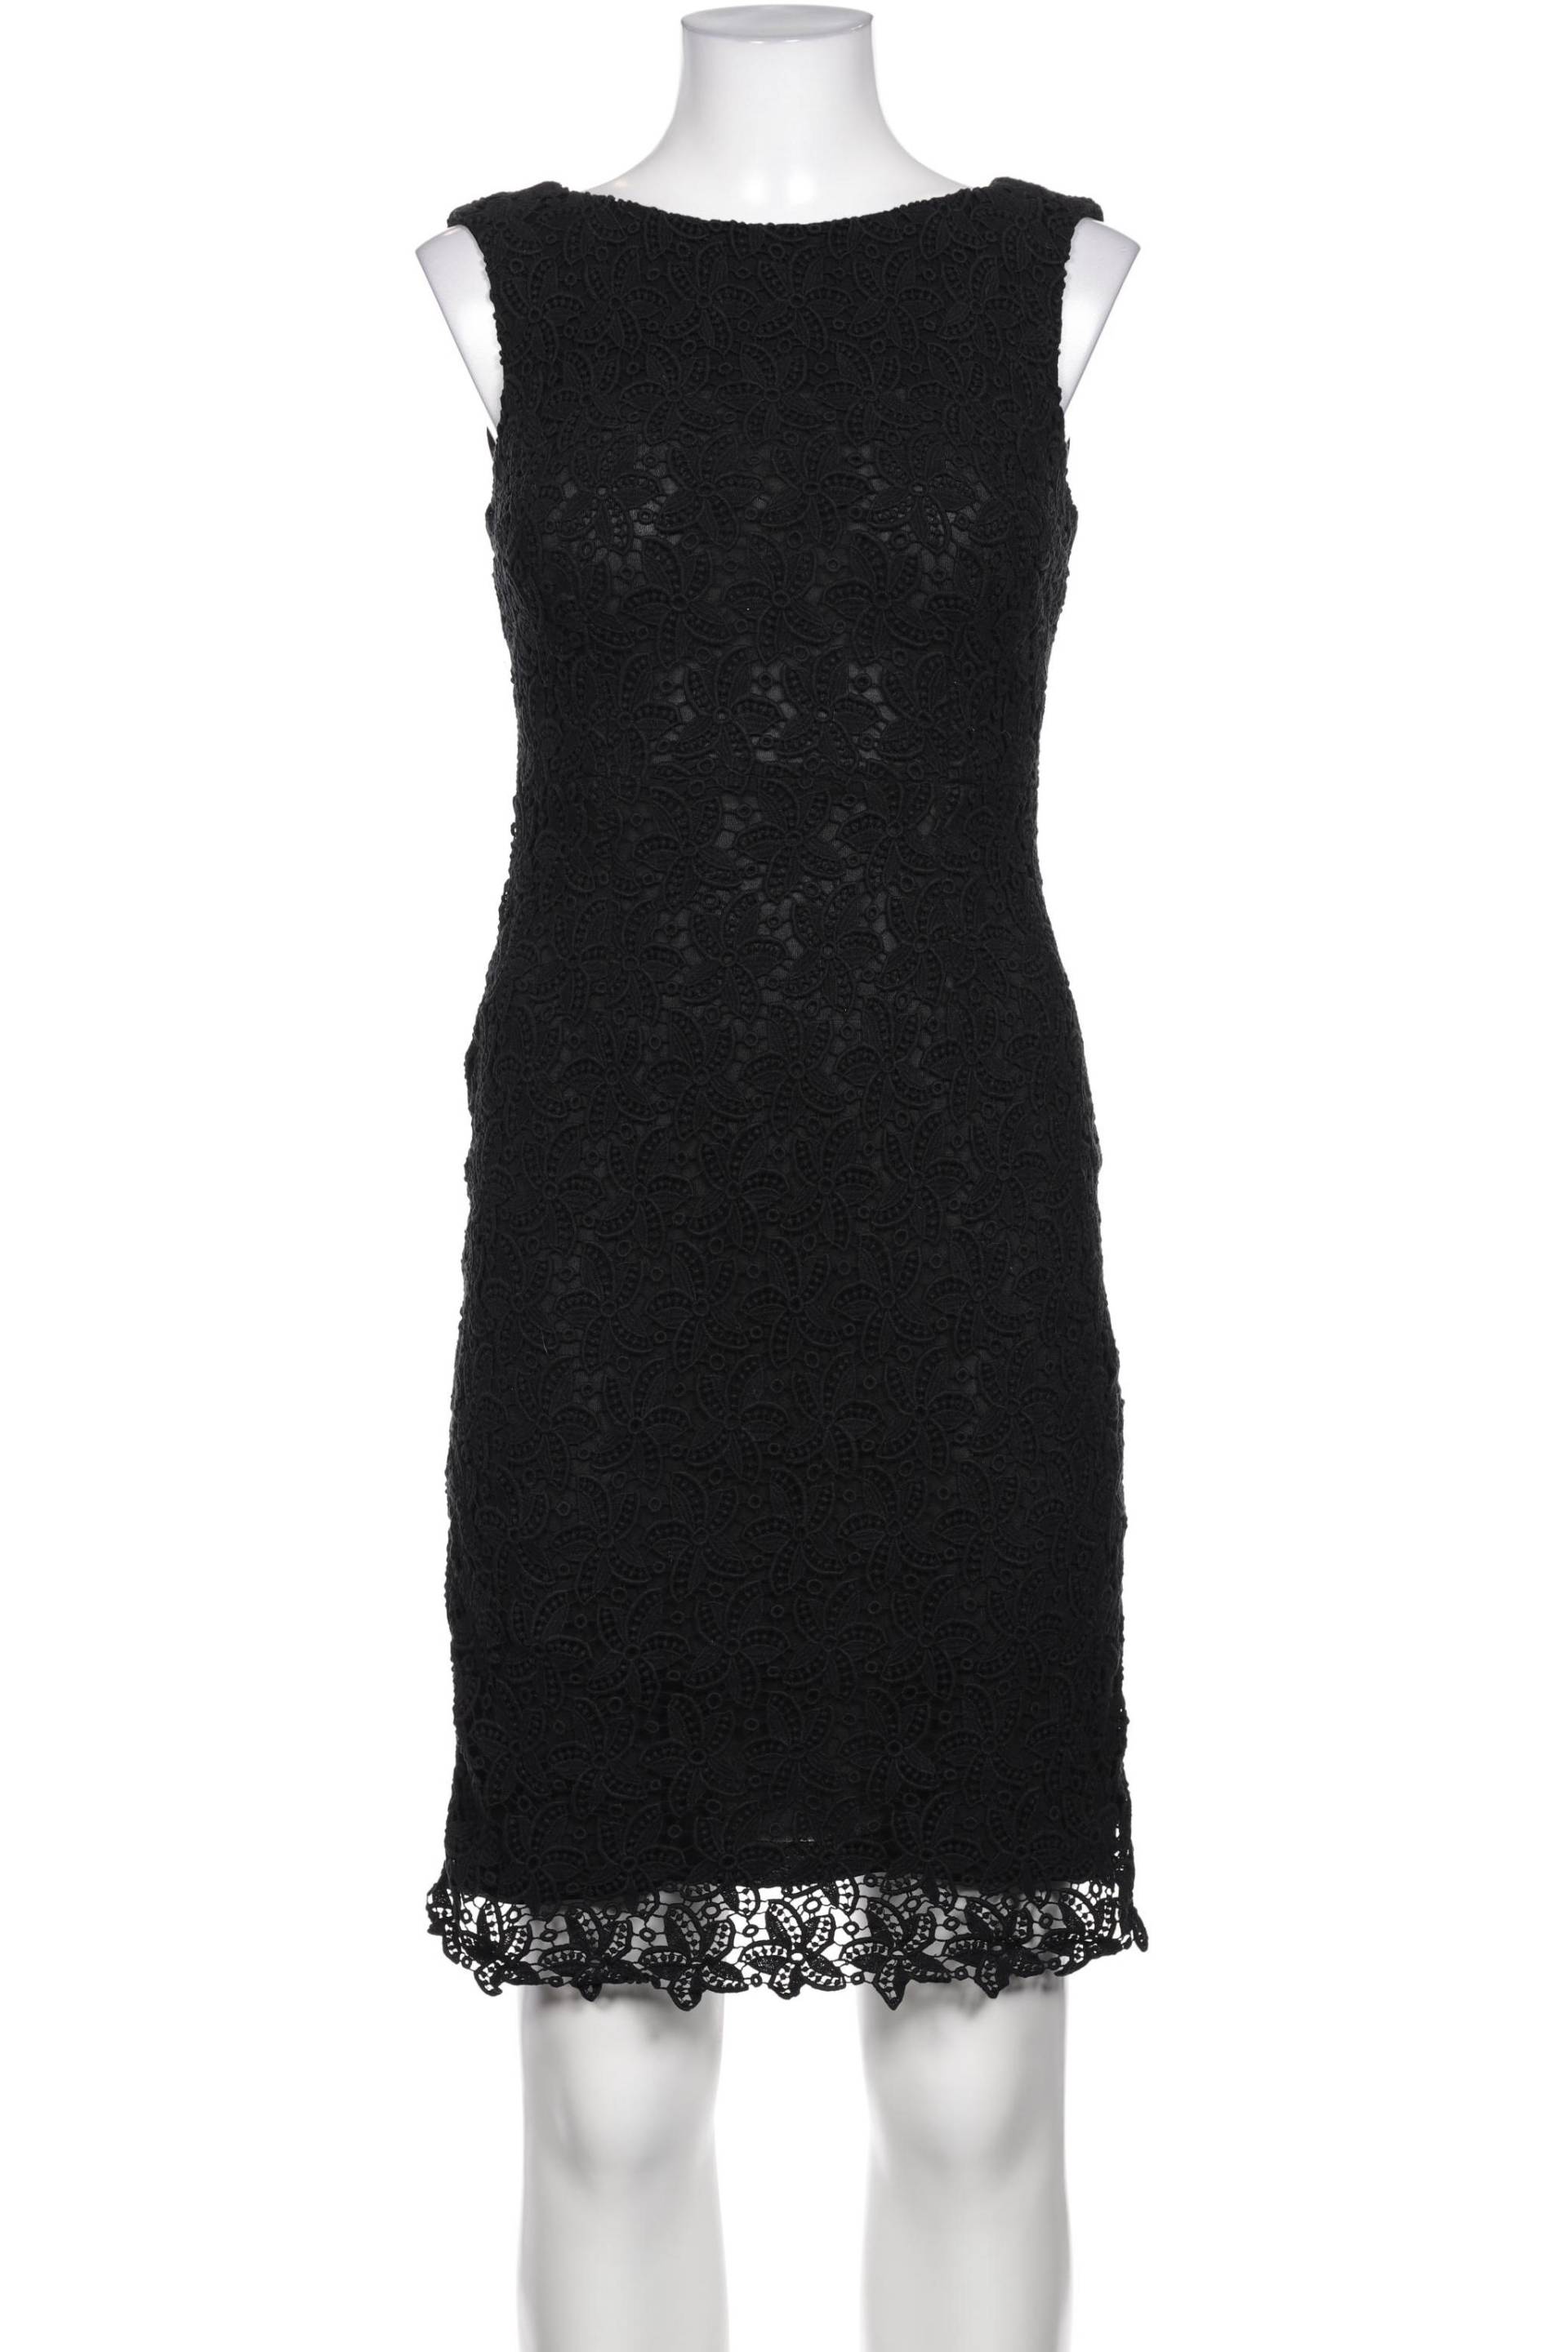 TOM TAILOR Denim Damen Kleid, schwarz von Tom Tailor Denim